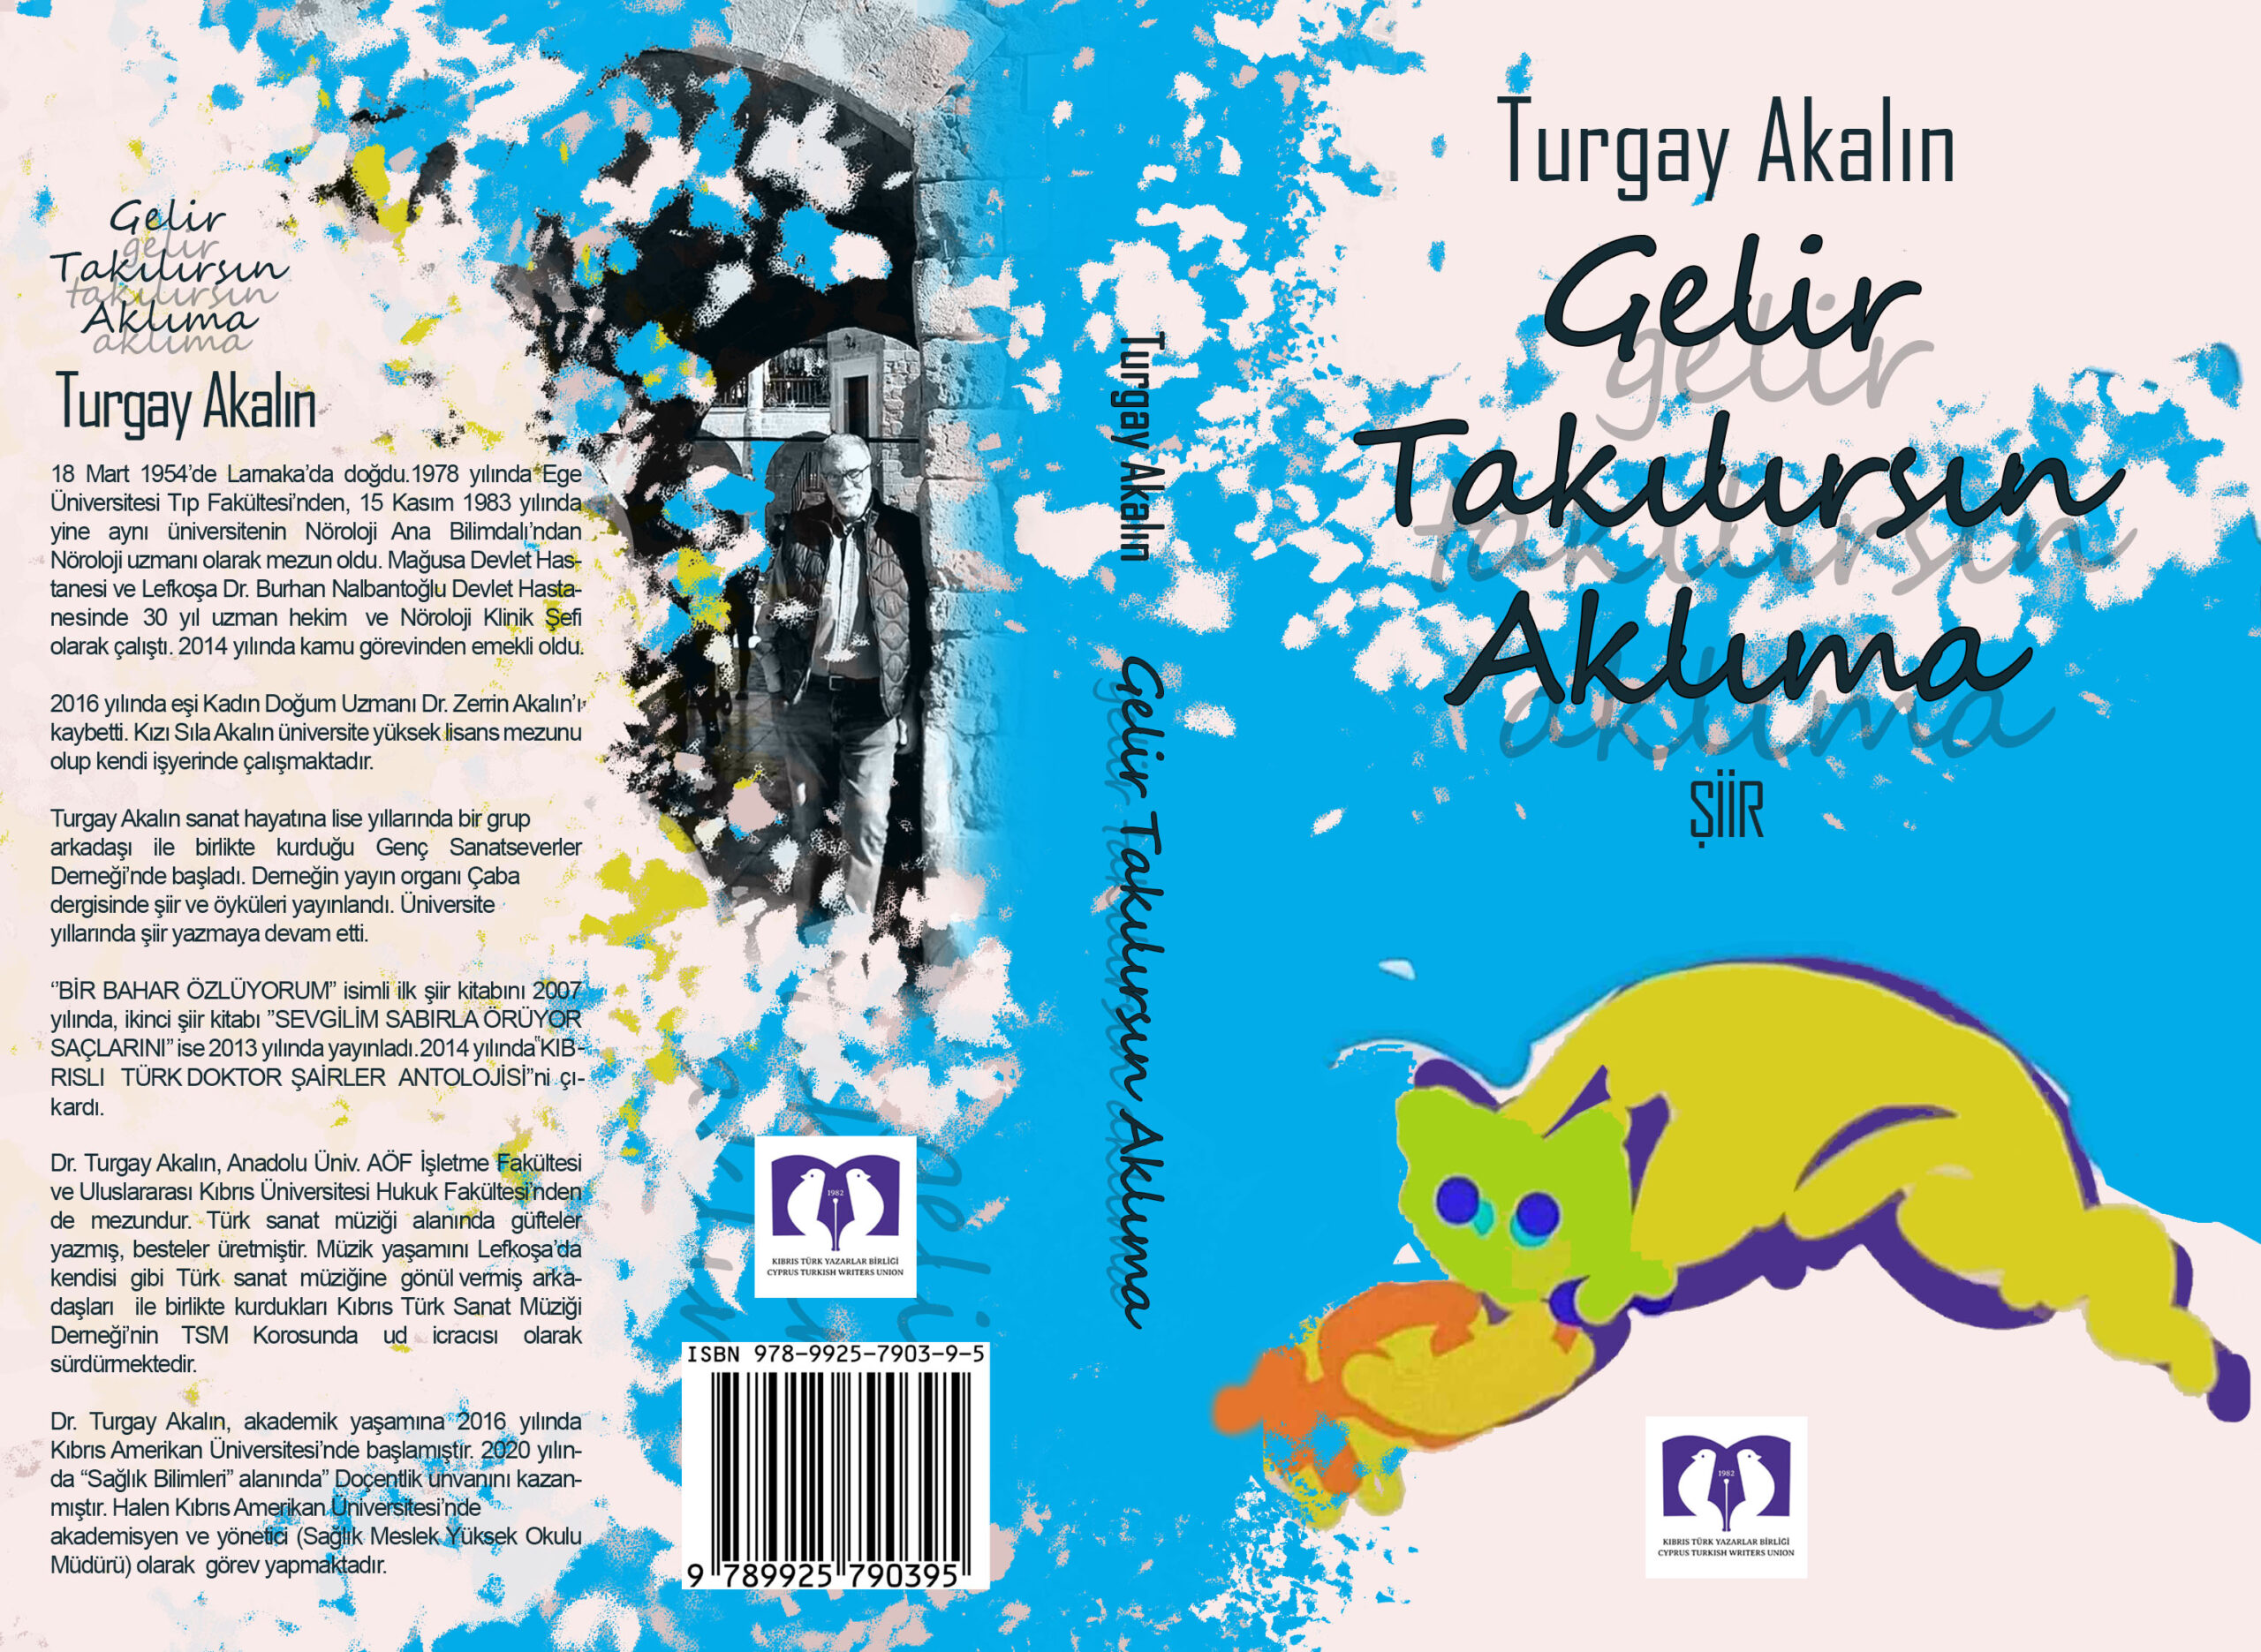 Turgay Akalın’ın yeni şiir kitabı “Gelir Takılırsın Aklıma” yayımlandı